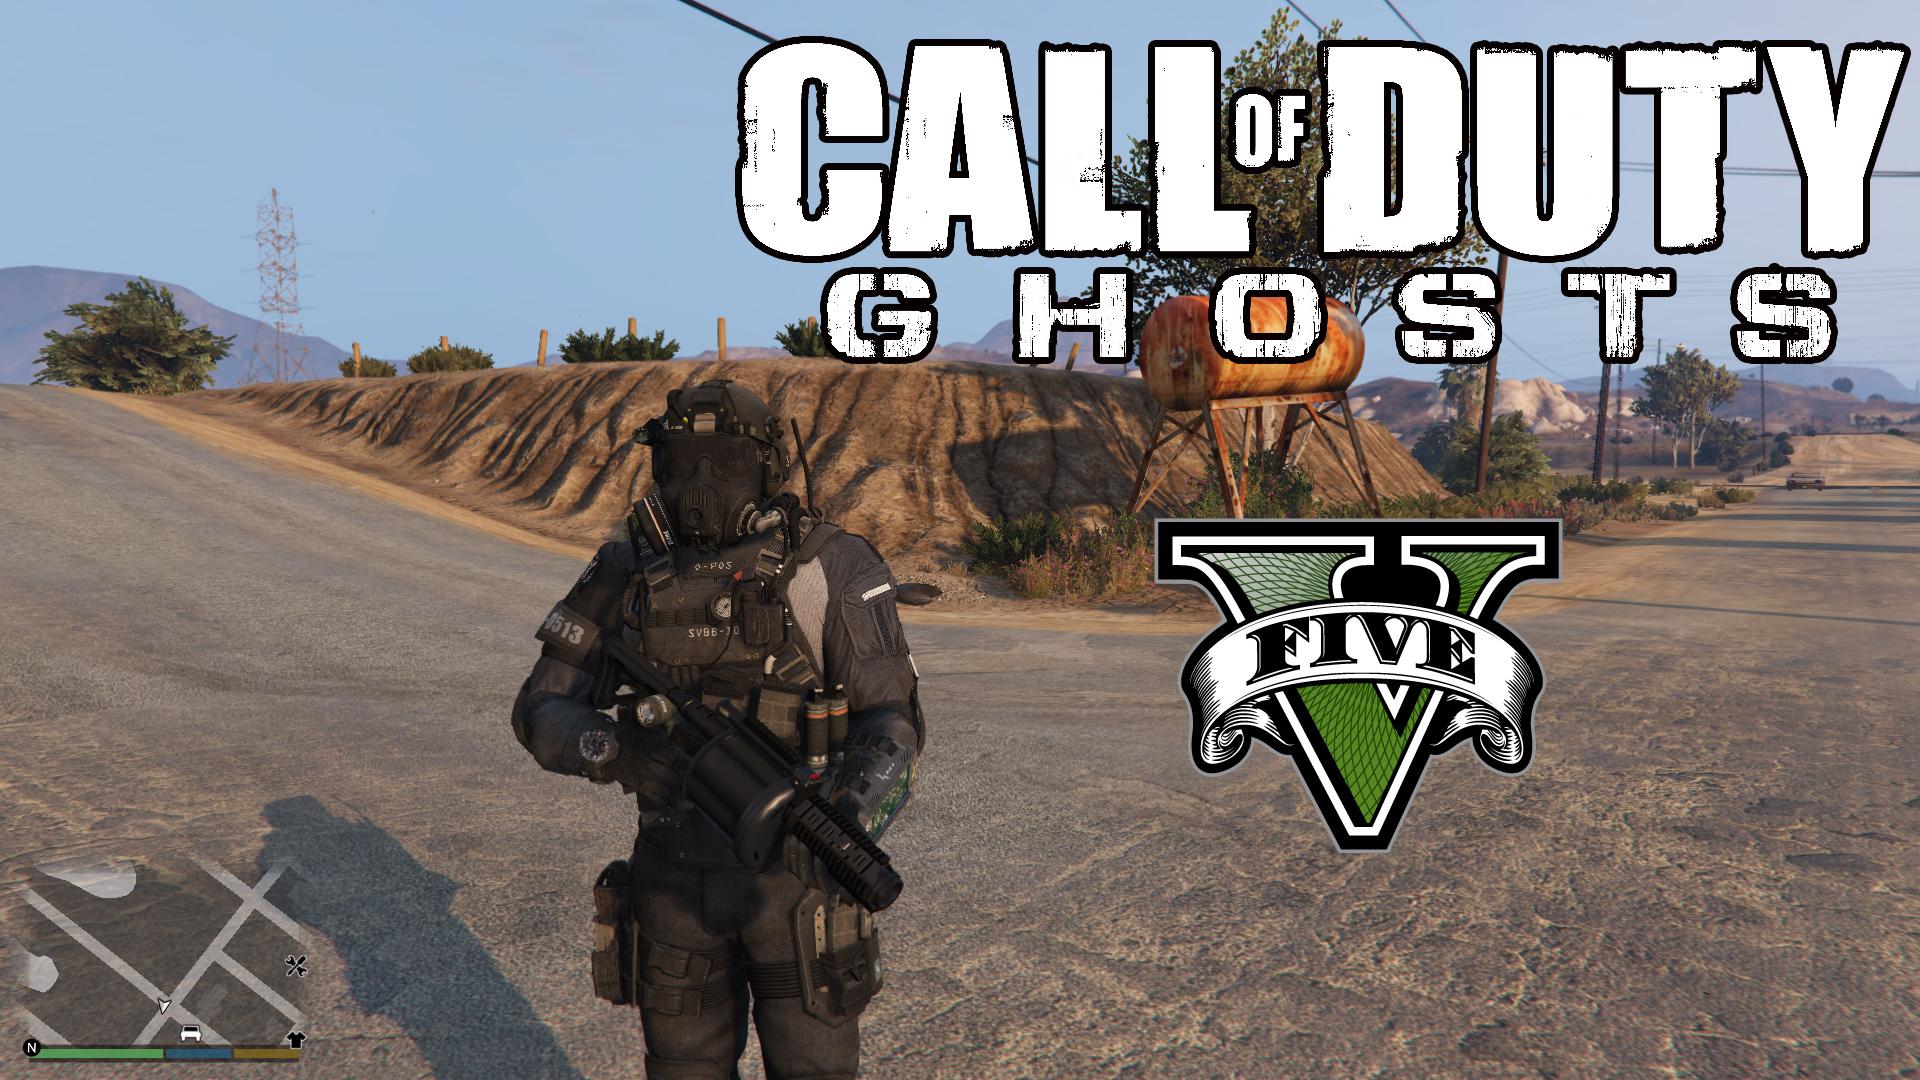 10 fatos sobre Ghost em Call of Duty